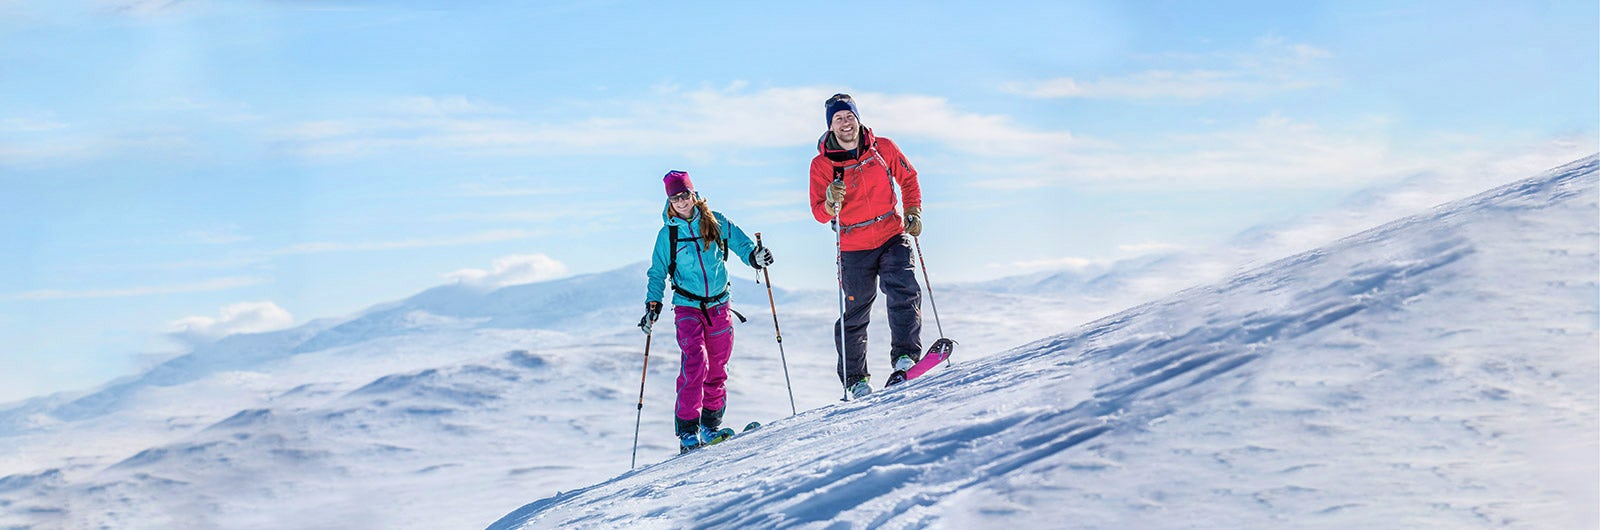 Couple summit skiing